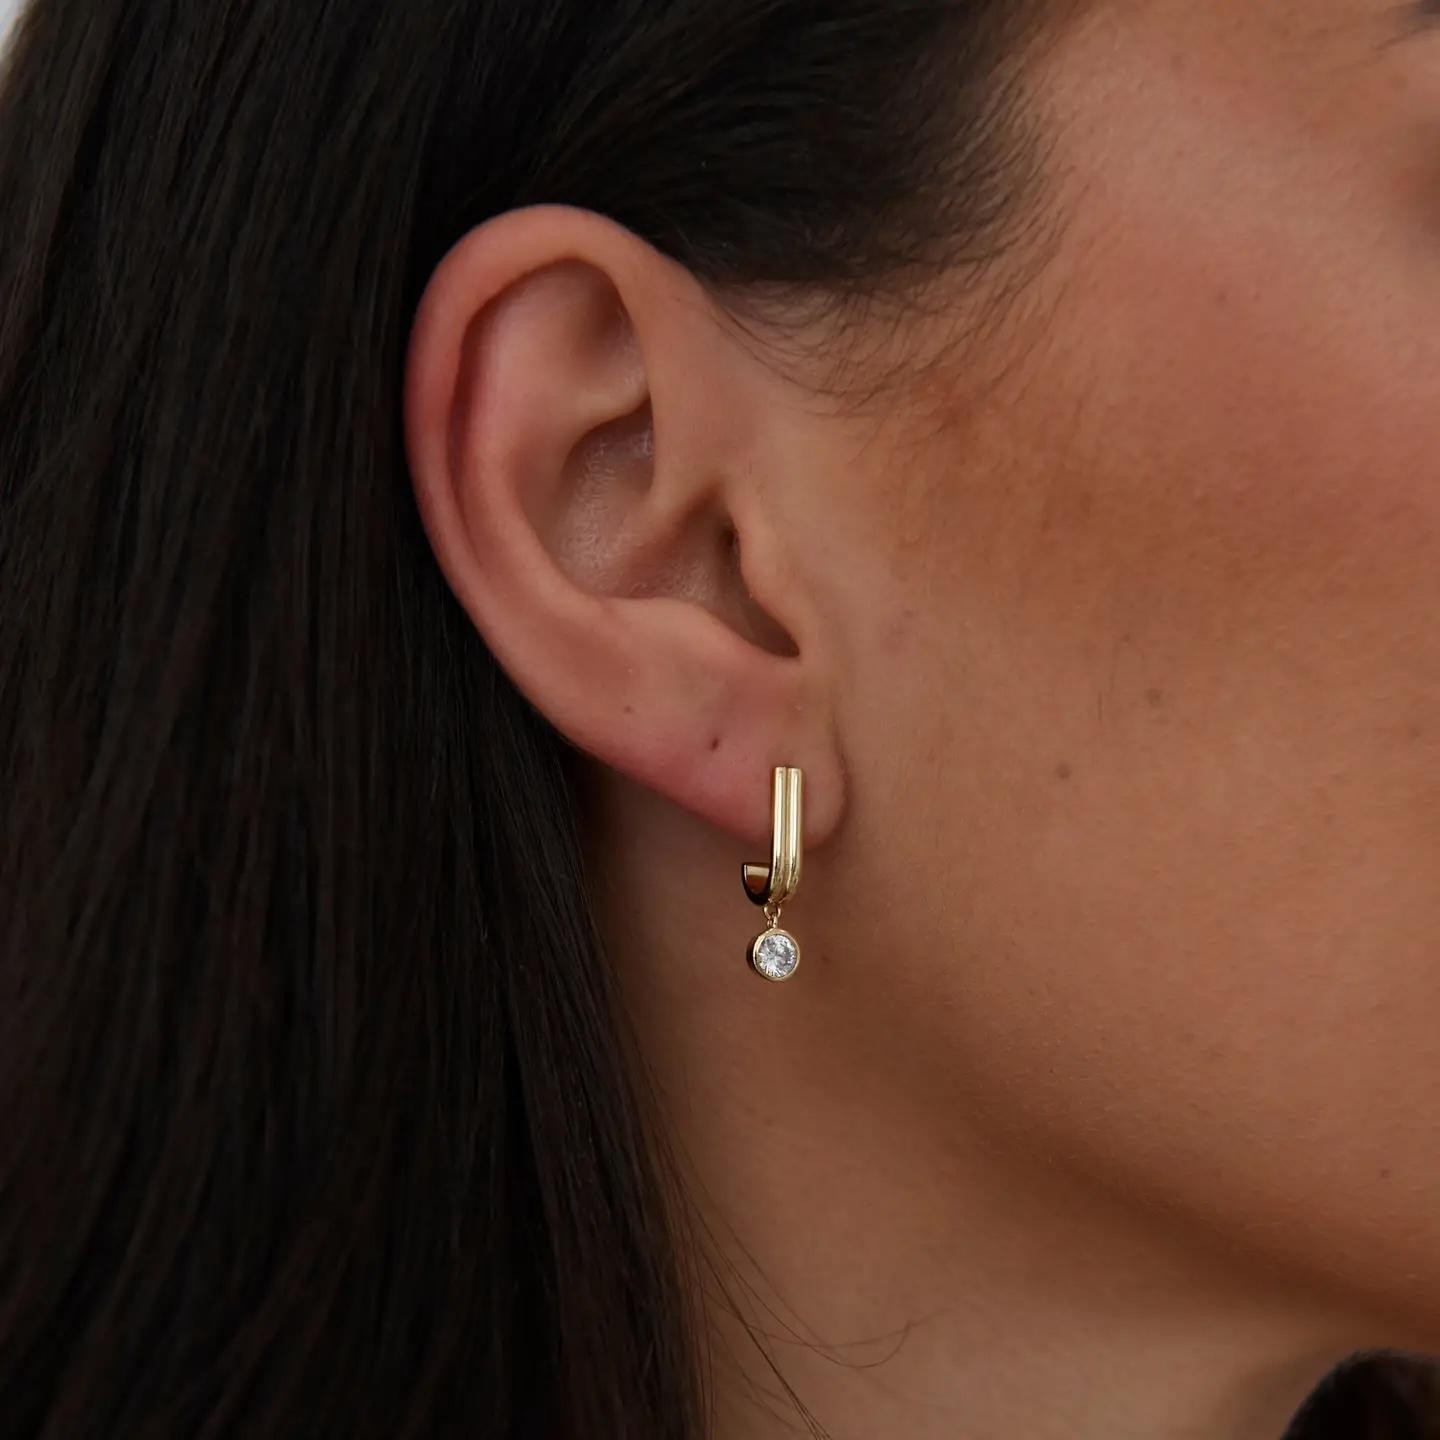 SAH Iris CZ earring